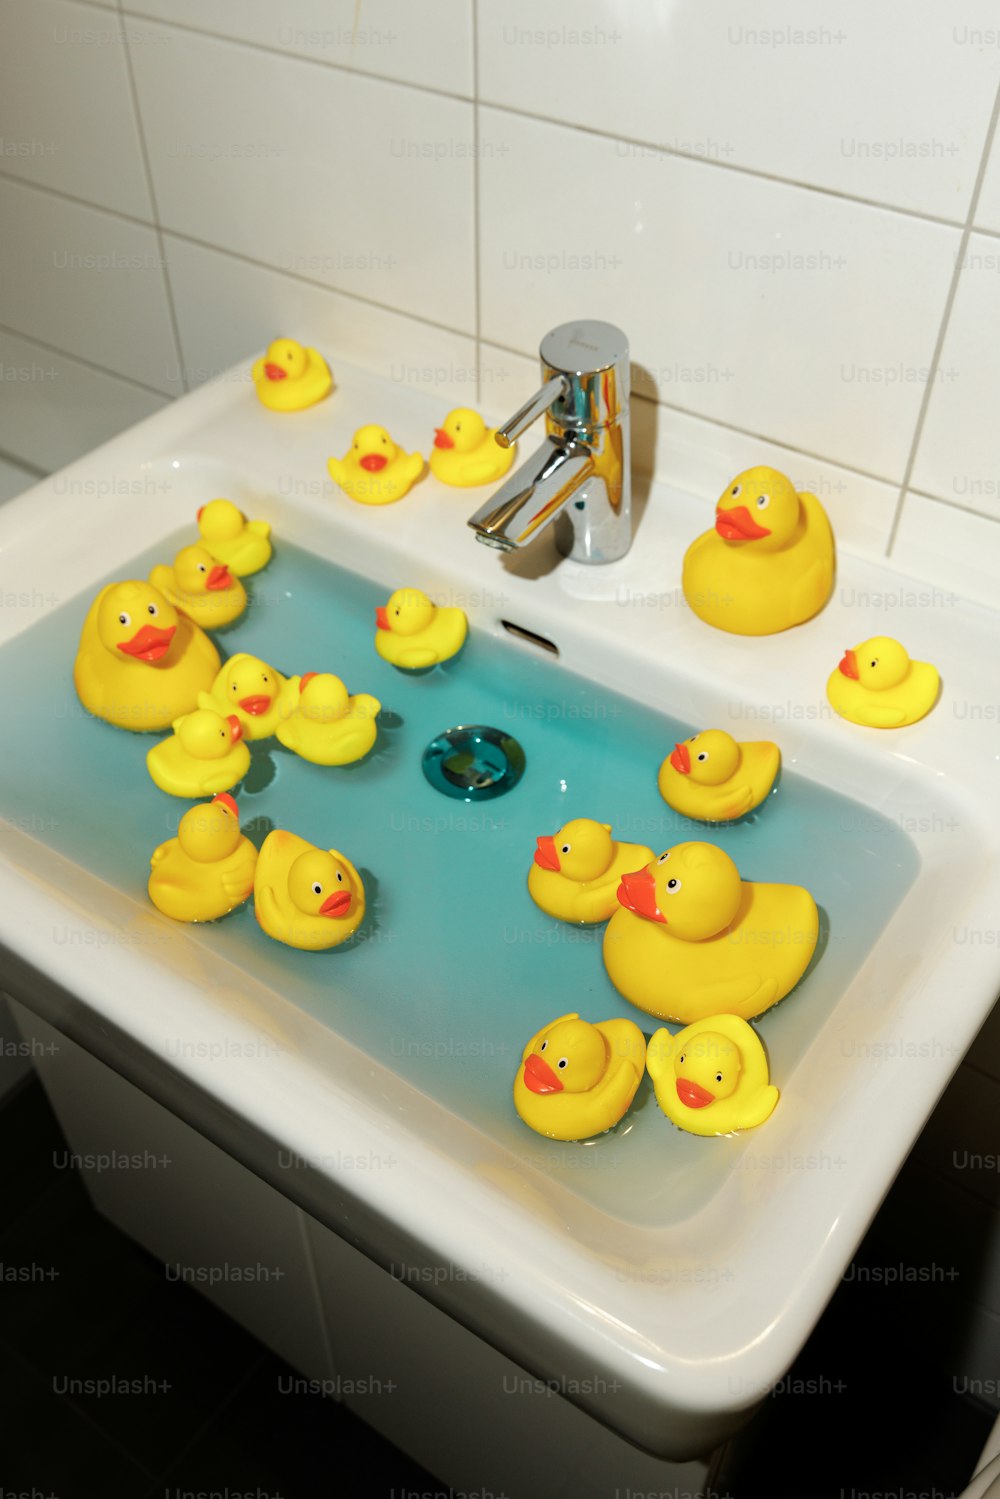 30k+ Imágenes de pato de goma  Descargar imágenes gratis en Unsplash